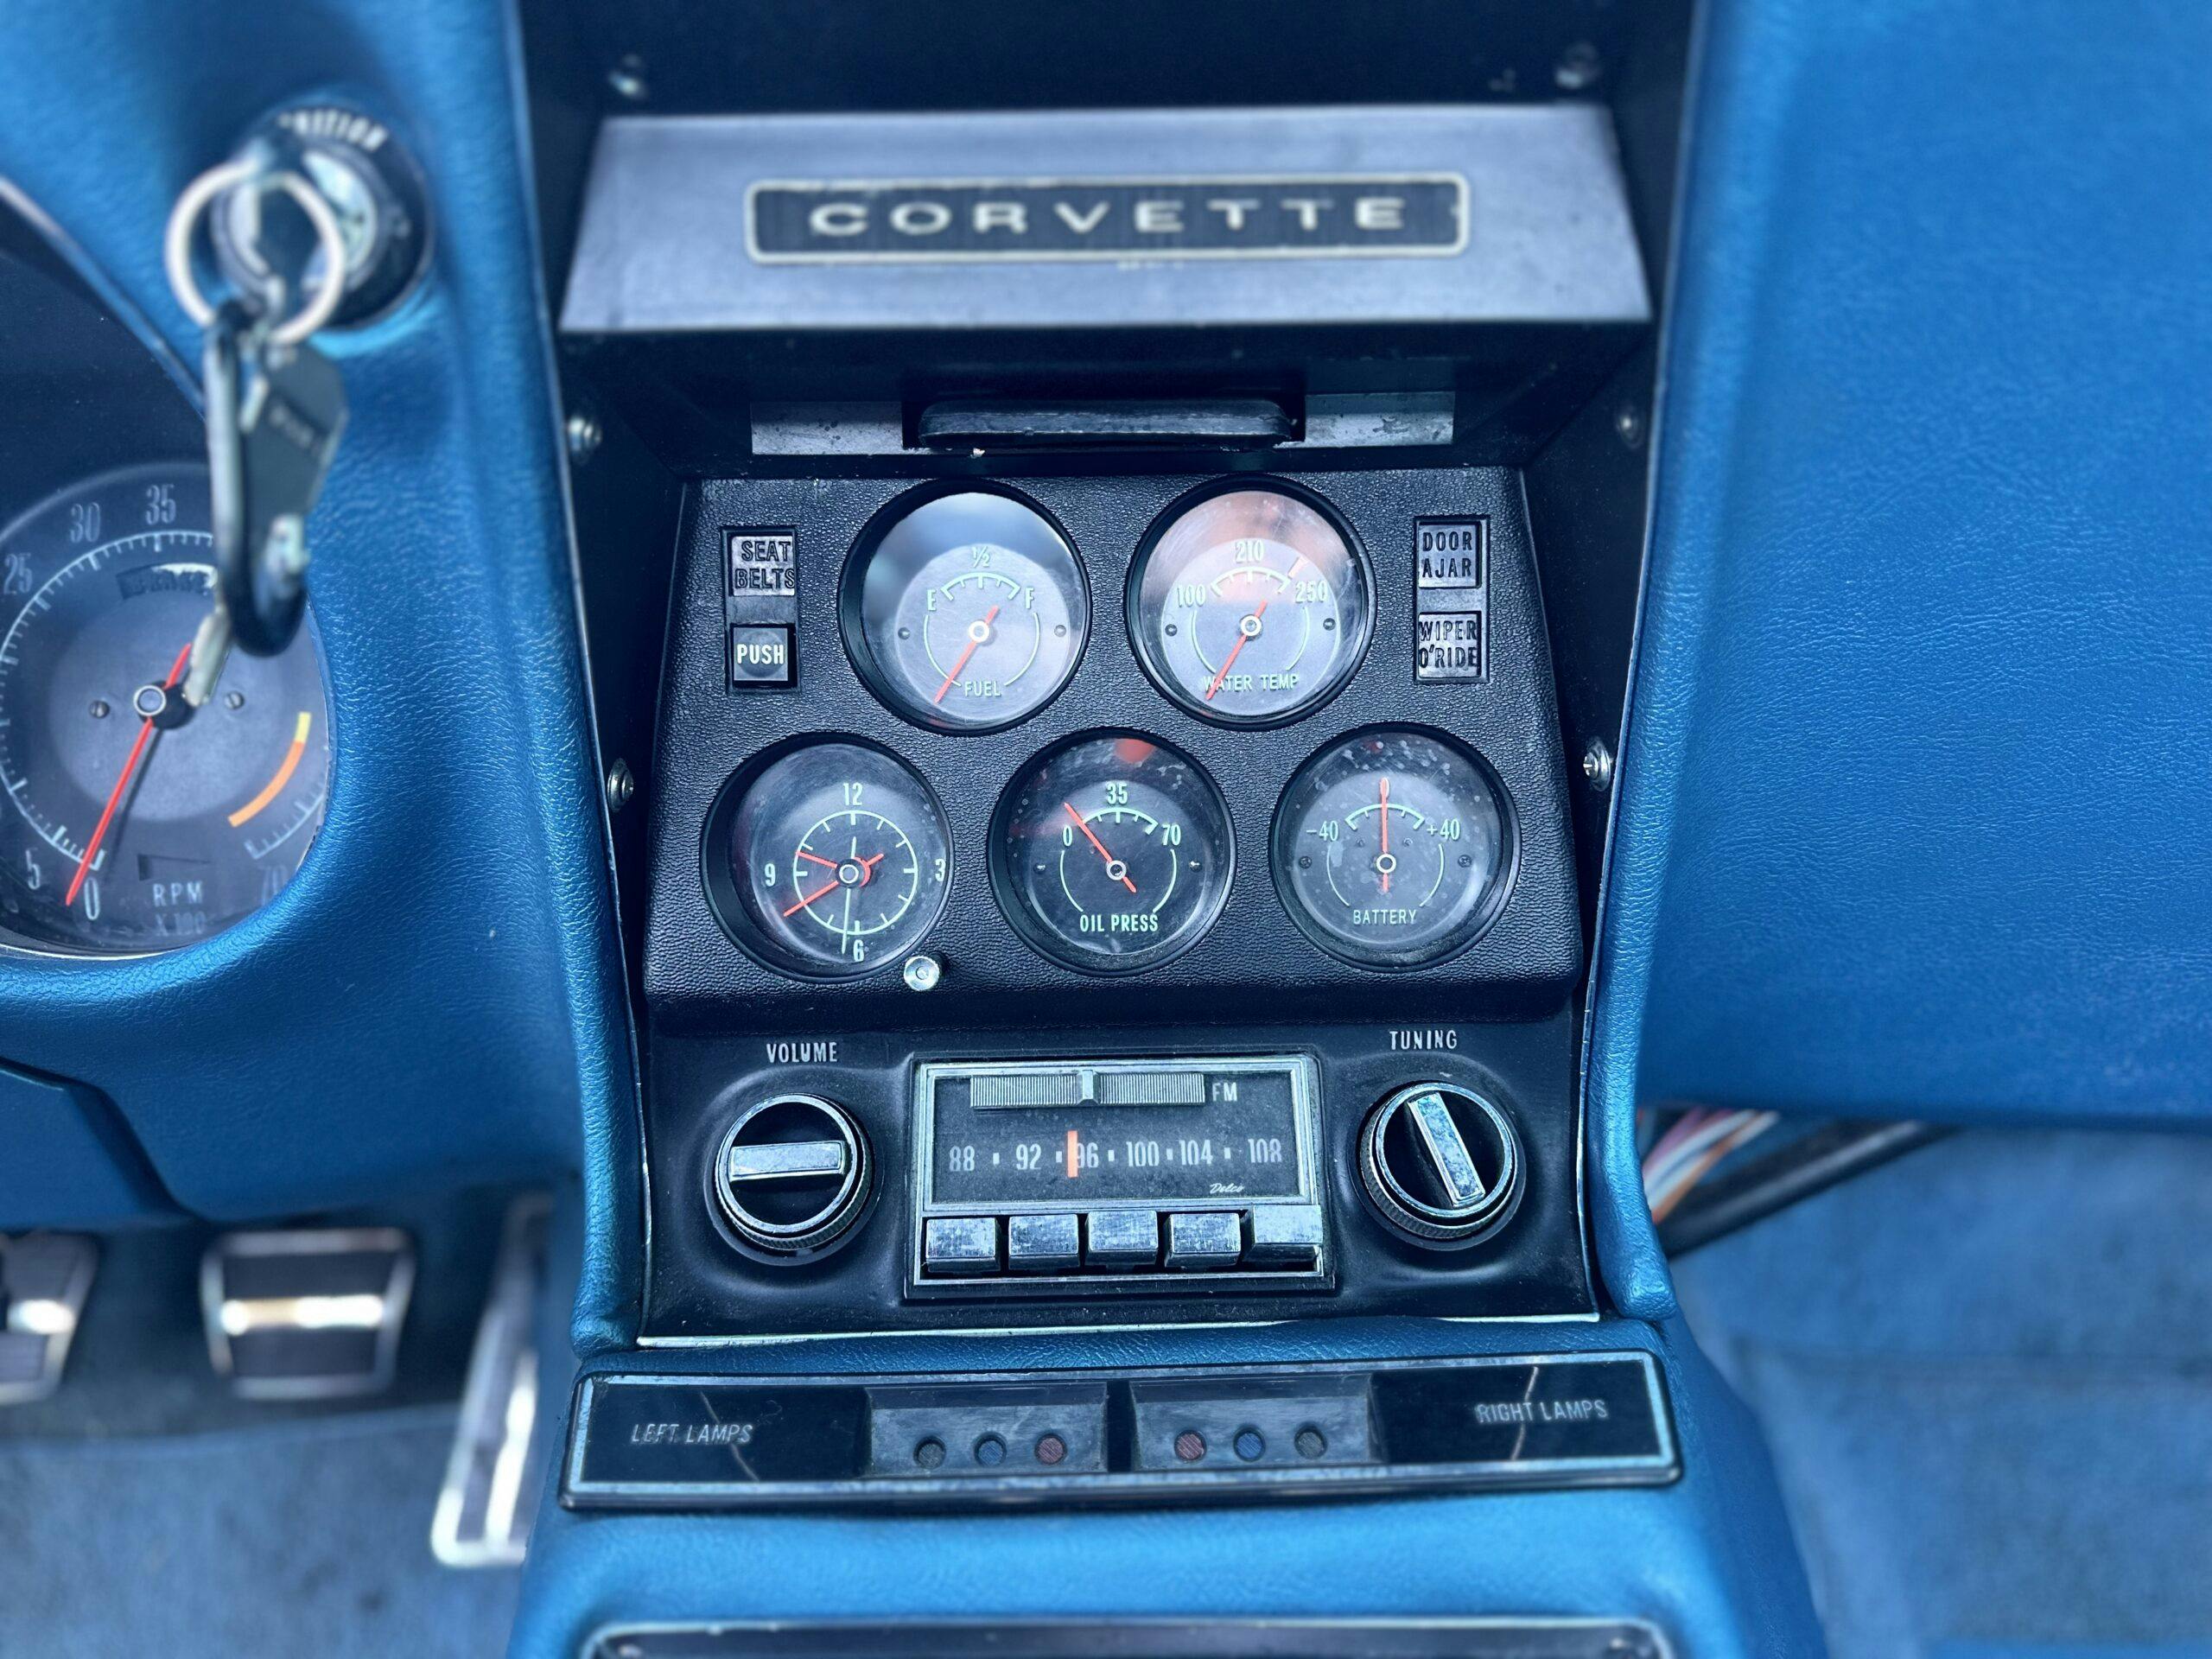 1968 Corvette C2 Stingray interior dash gauges